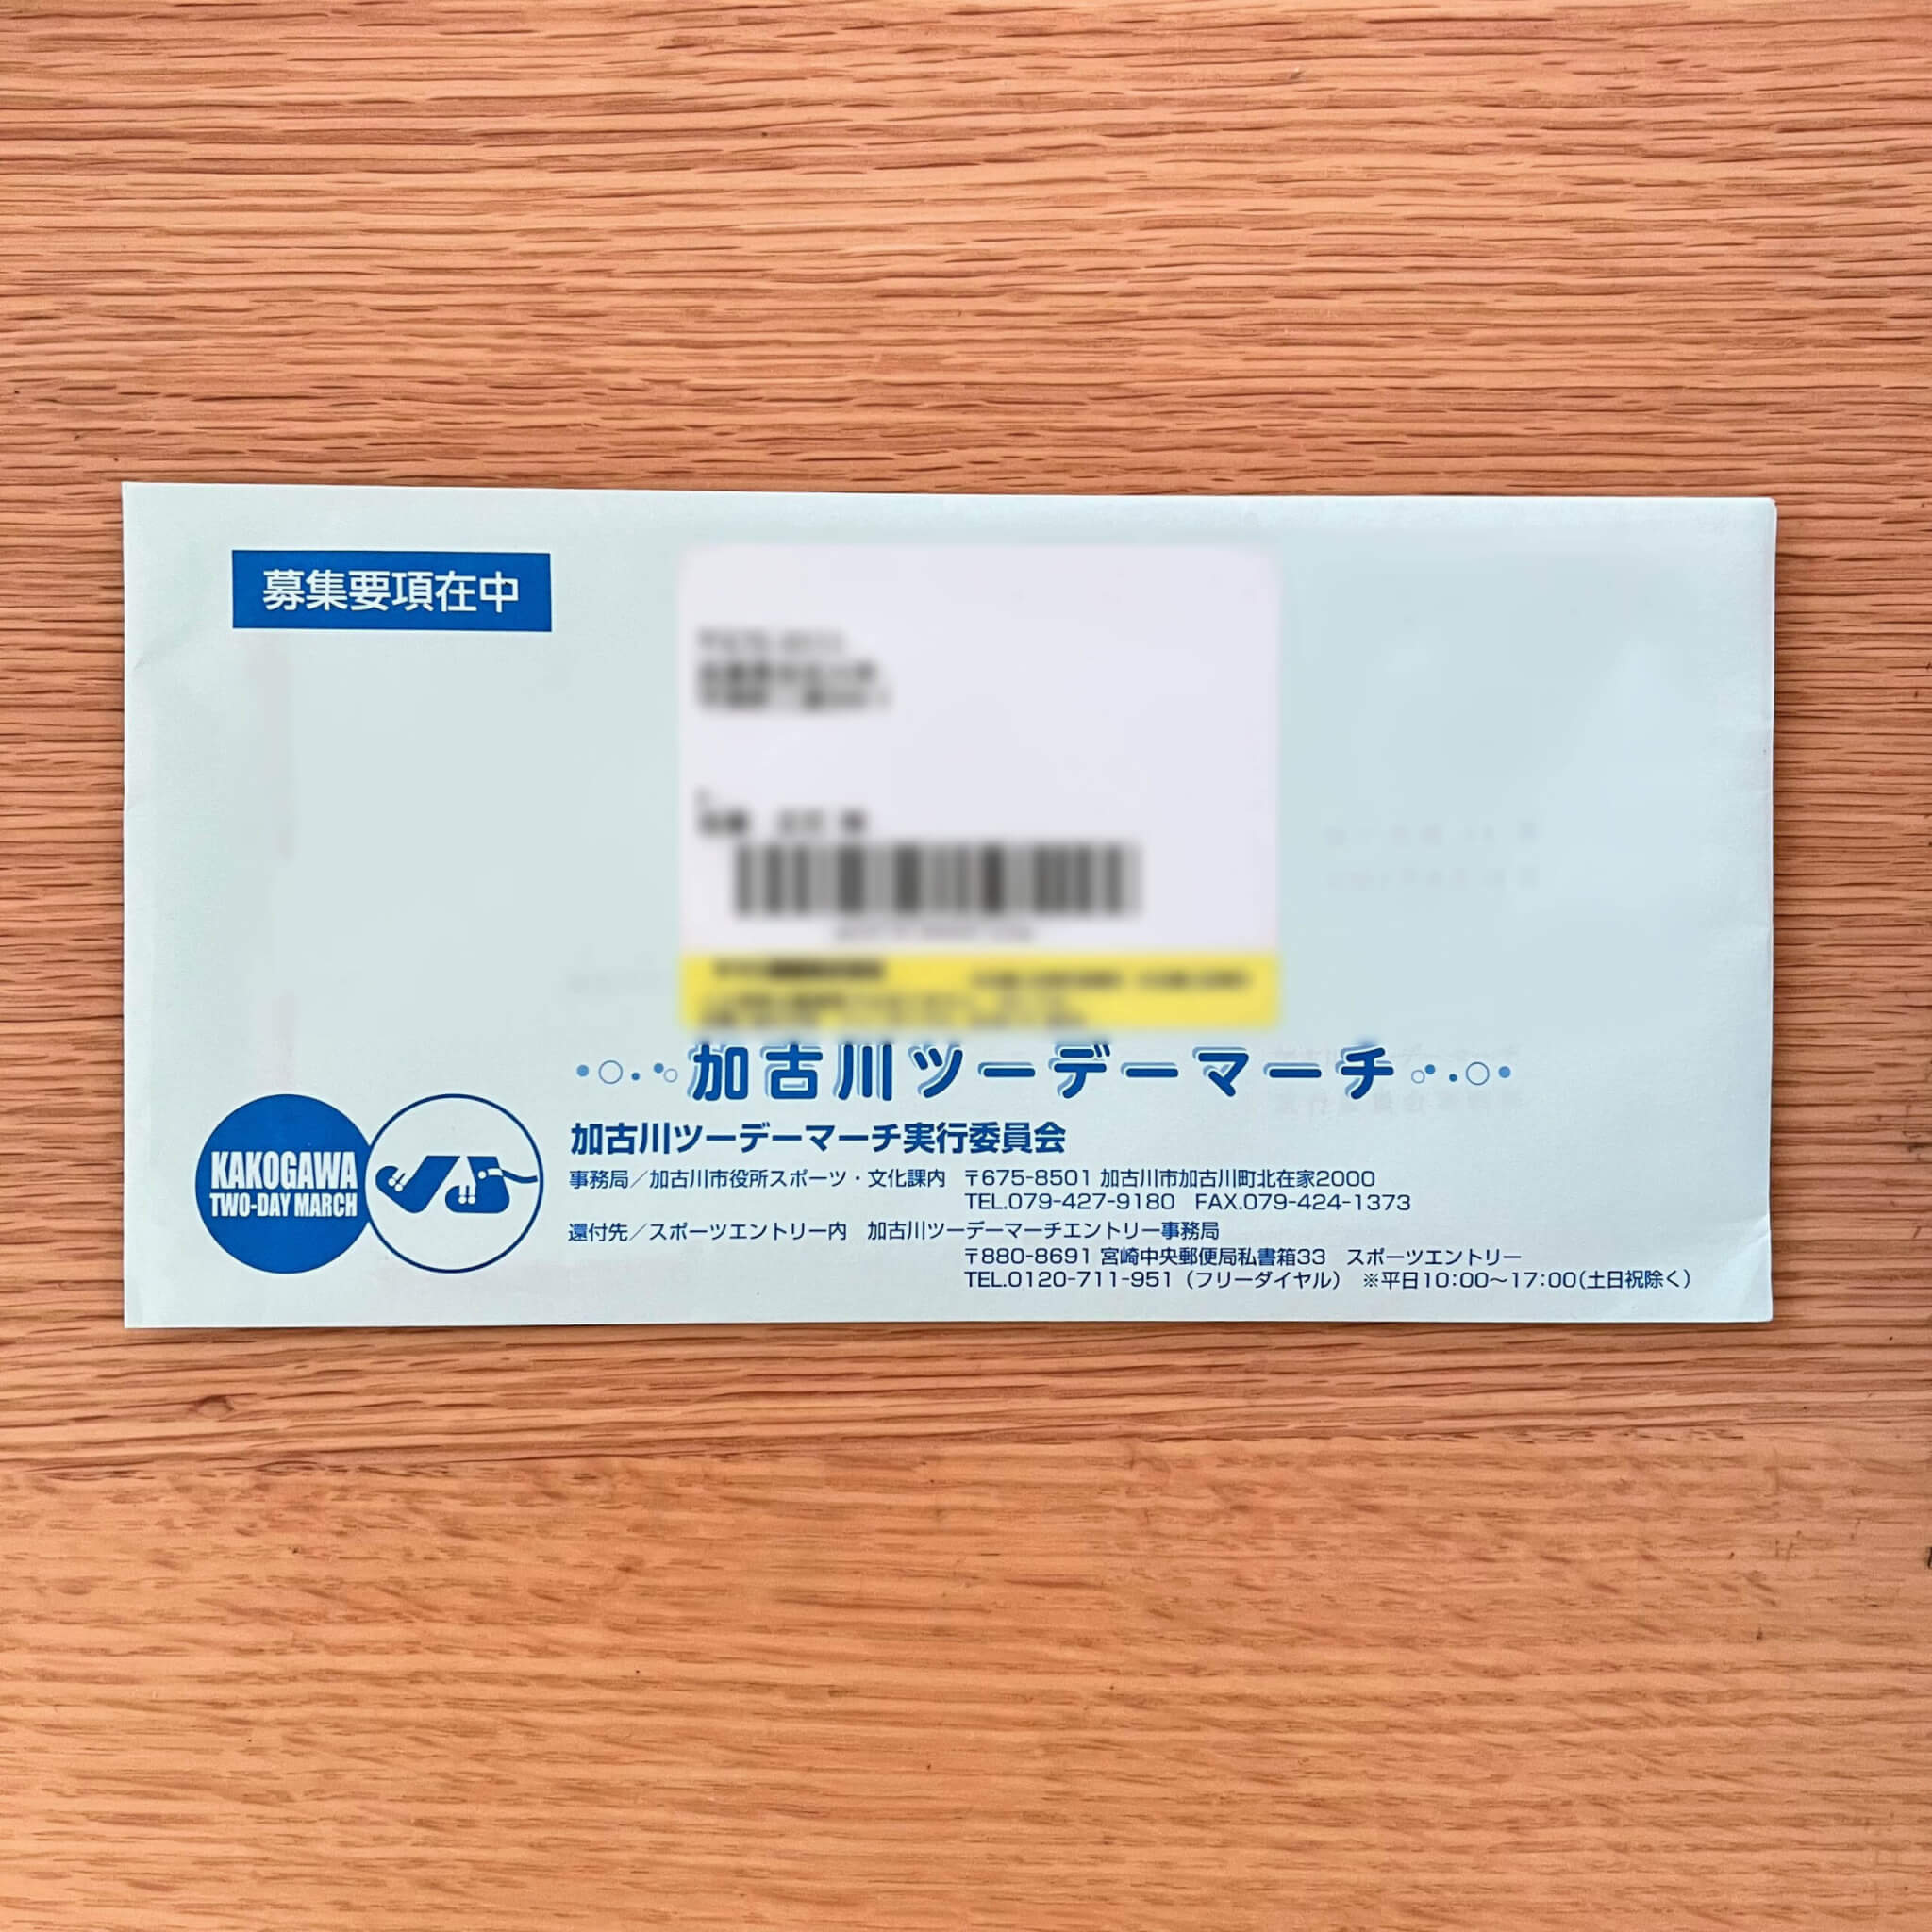 過去の参加者宛に送付された第32回加古川ツーデーマーチ募集要項の封筒